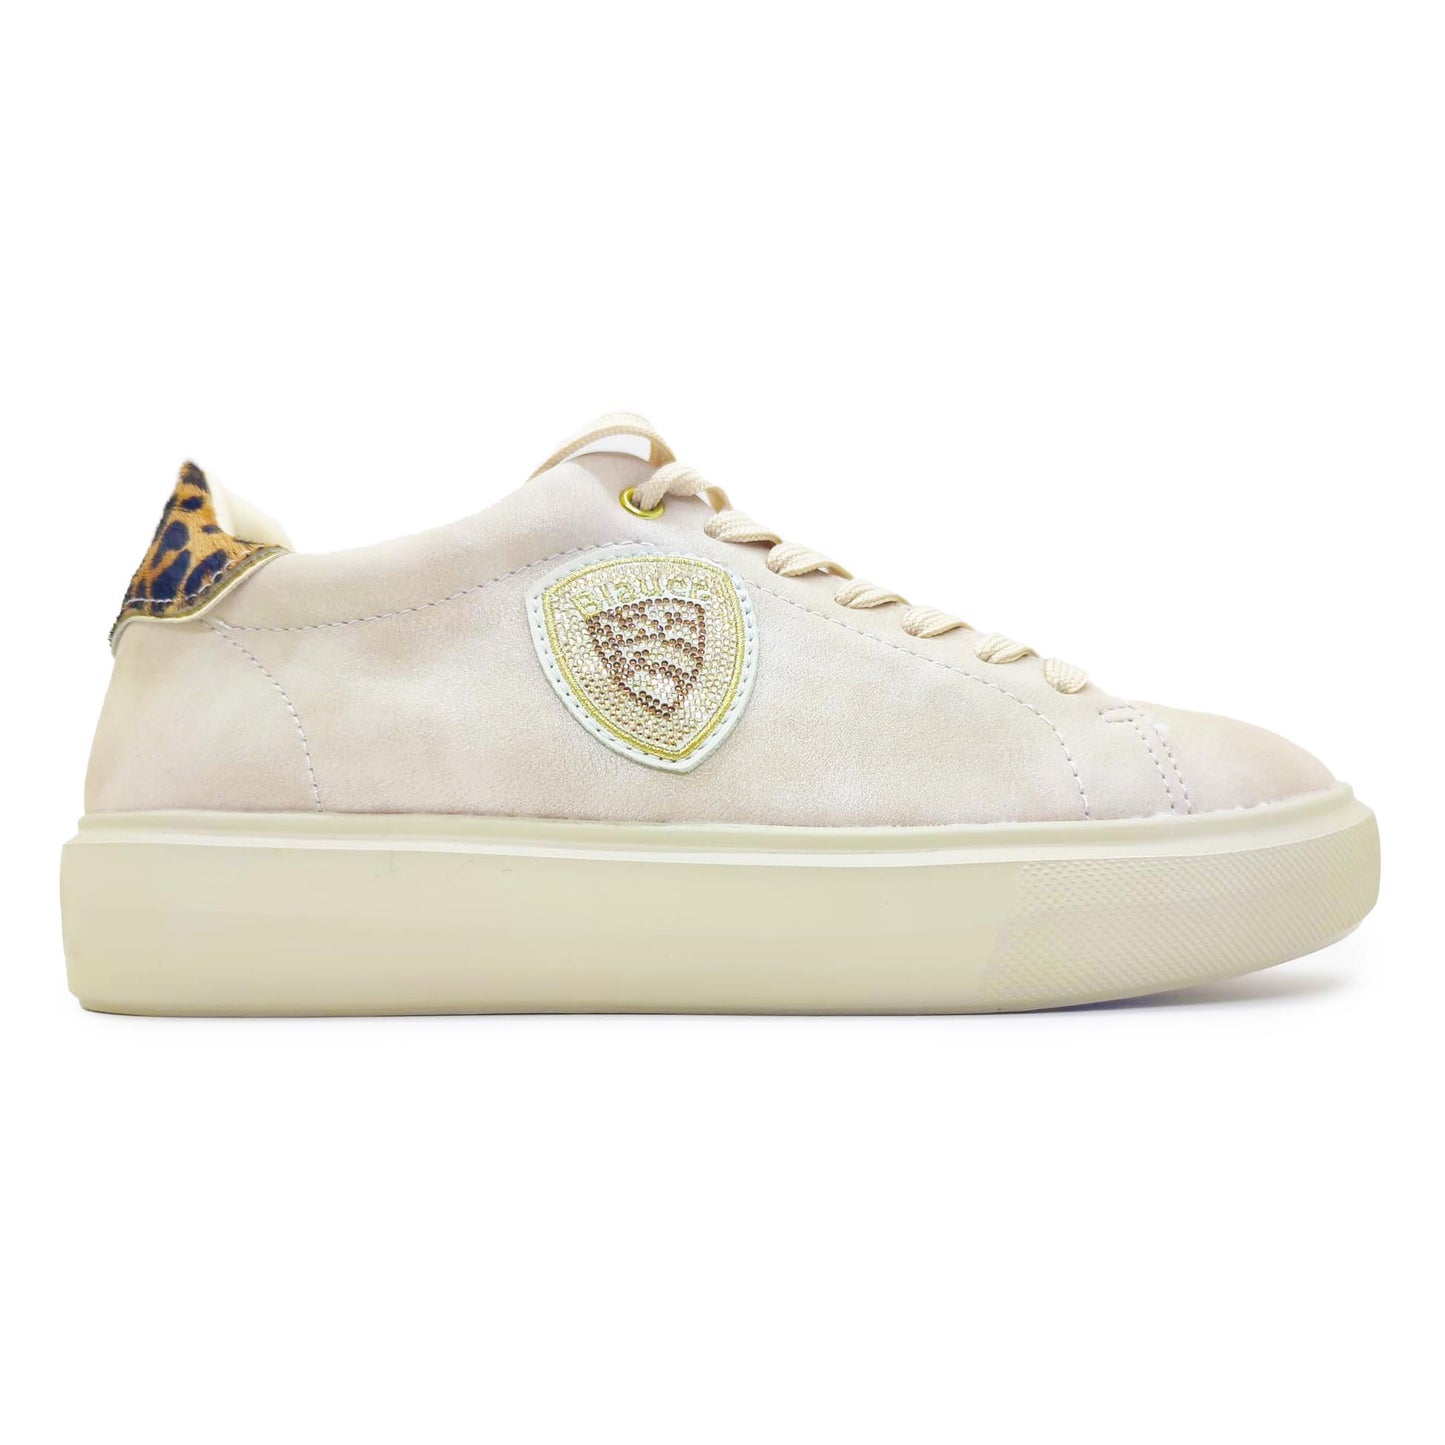 Blauer sneakers in pelle beige con lacci e logo brillantinato tallone leopardato